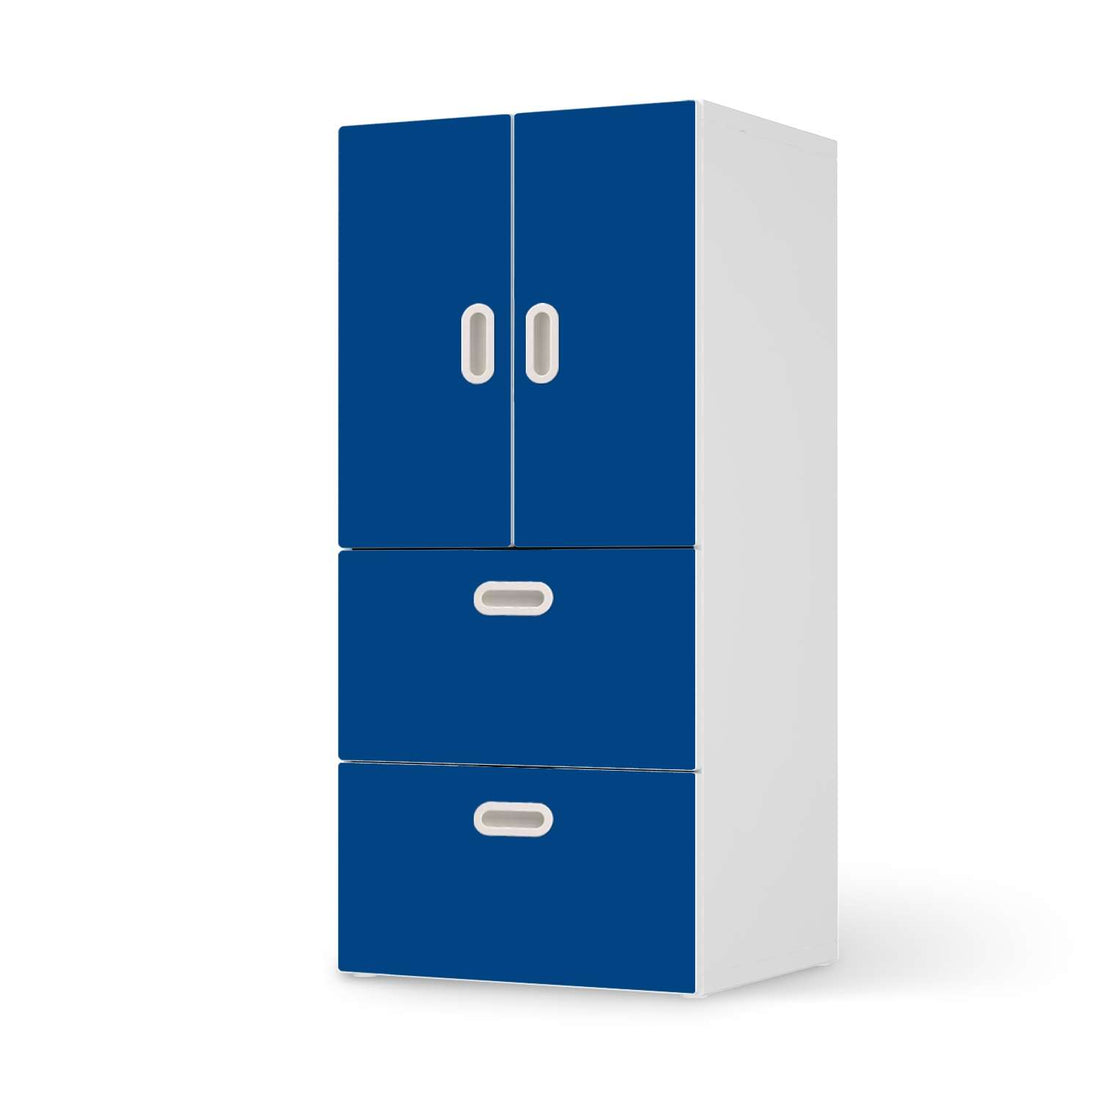 Möbelfolie Blau Dark - IKEA Stuva / Fritids kombiniert - 2 Schubladen und 2 kleine Türen  - weiss